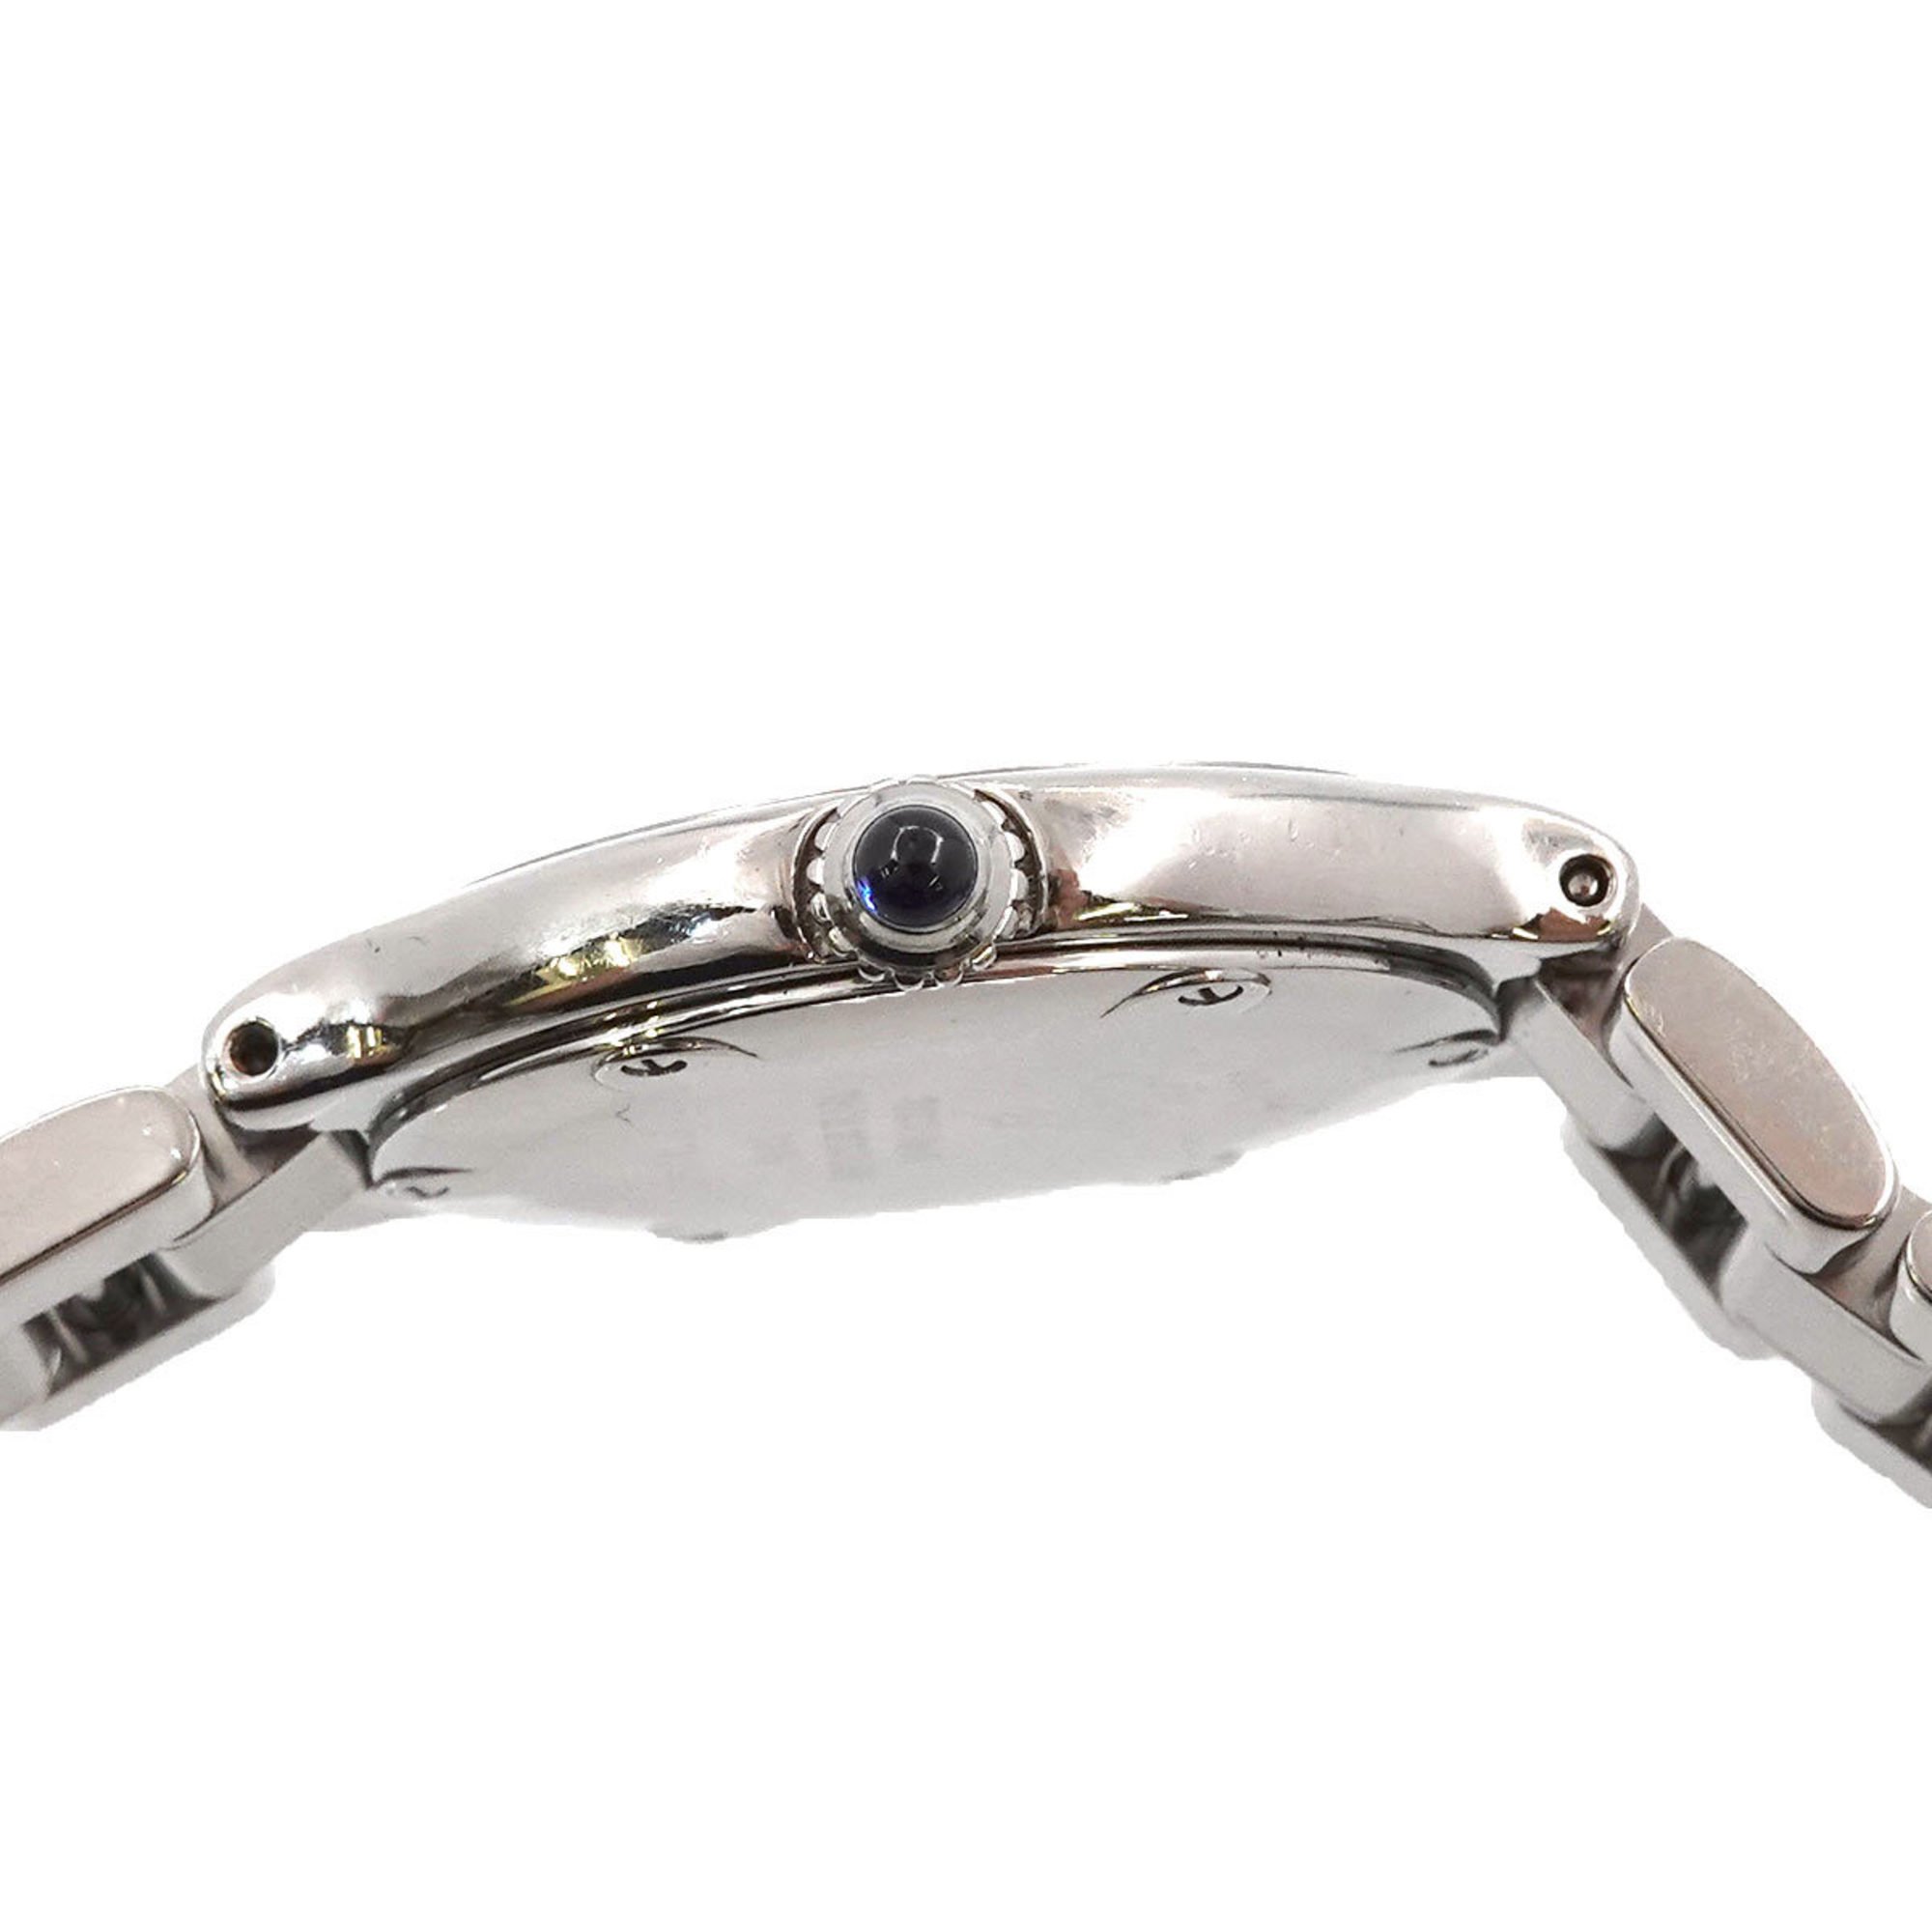 Cartier Must21 Vantian W10109T2 Women's Watch Silver Dial Quartz